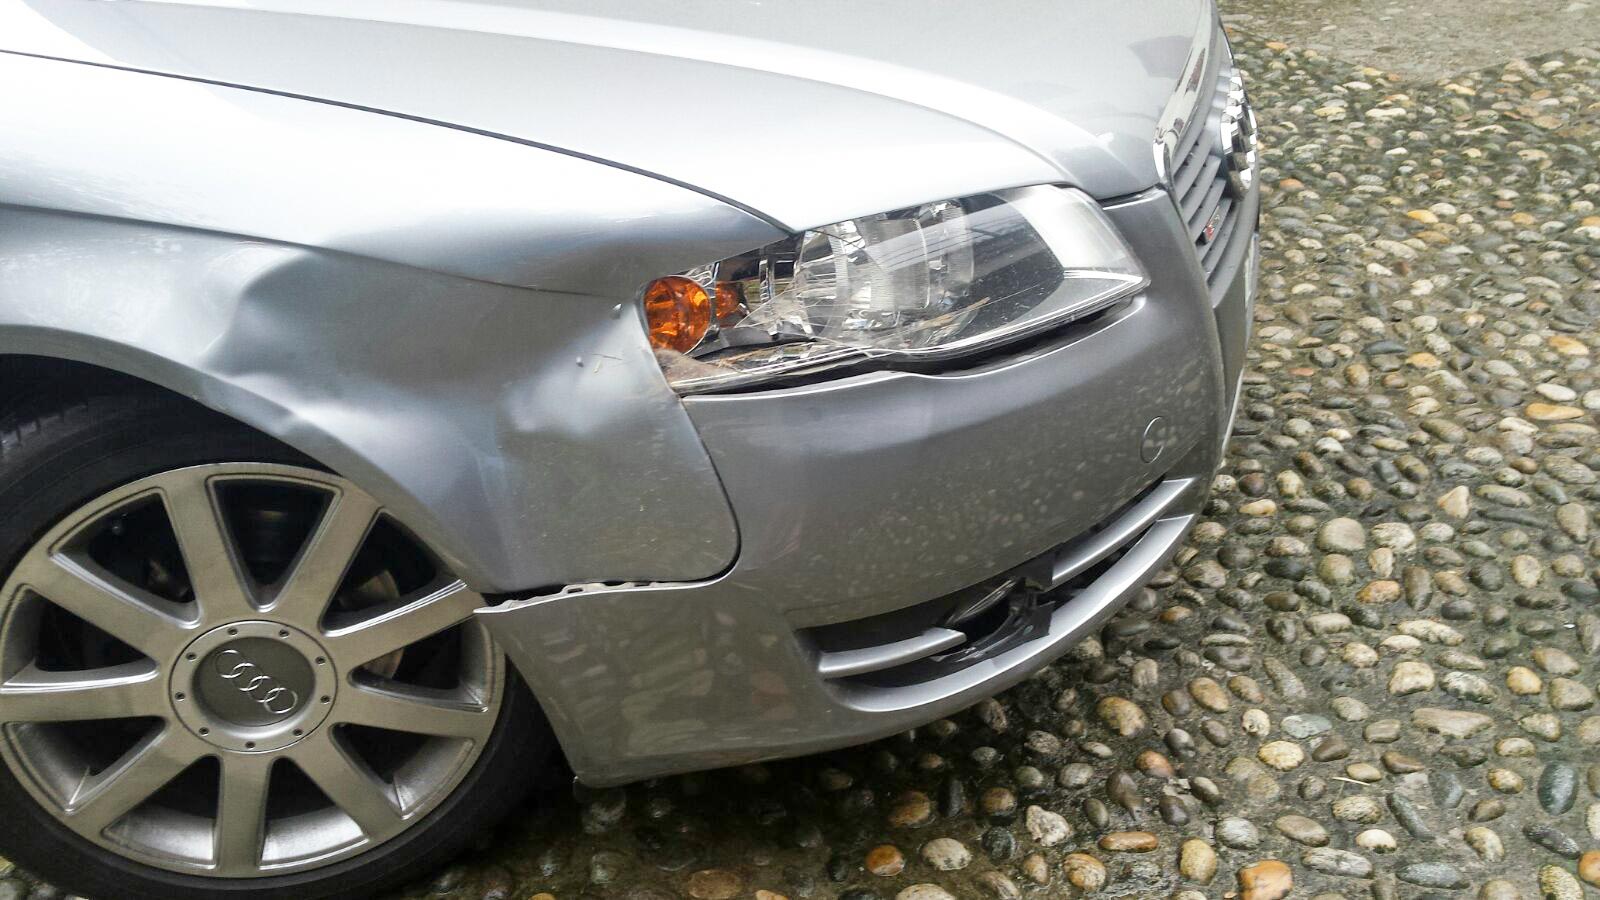 Auto danneggiata da cervo